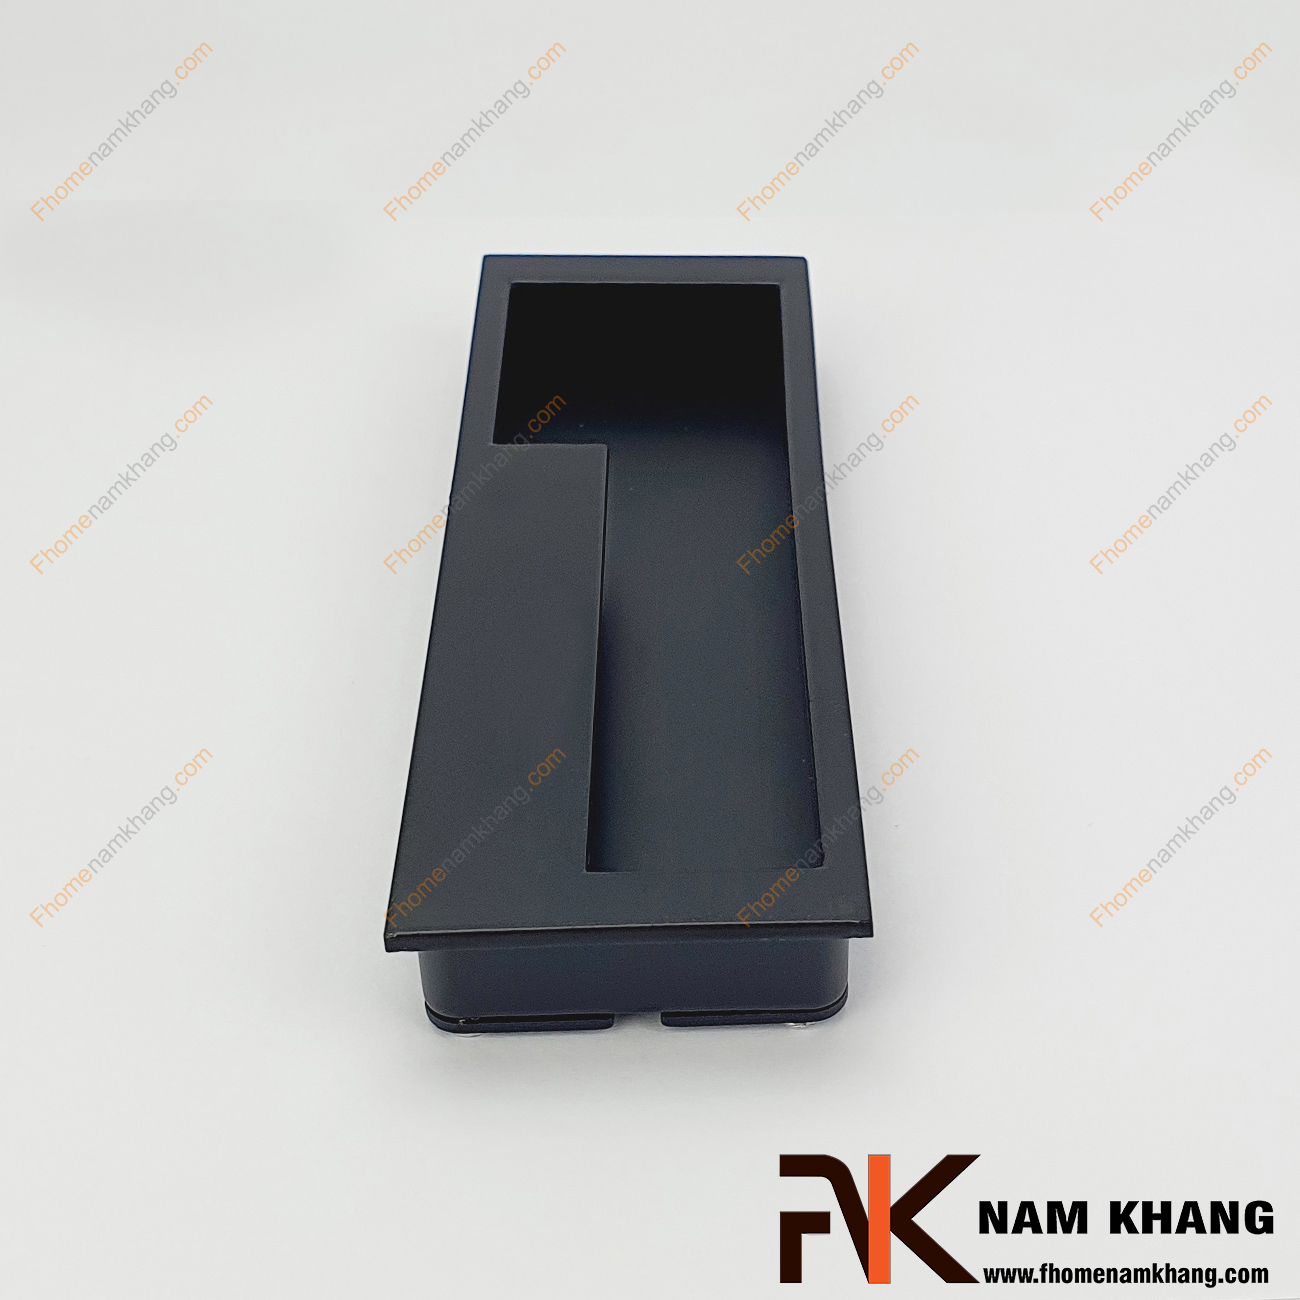 Tay nắm âm tủ màu đen dạng trơn NK438S-128D là loại tay nắm chuyên dùng cho các loại tủ đặt ở những nơi có không gian hạn chế hoặc dùng để nâng cao tính thẫm mỹ của sản phẩm